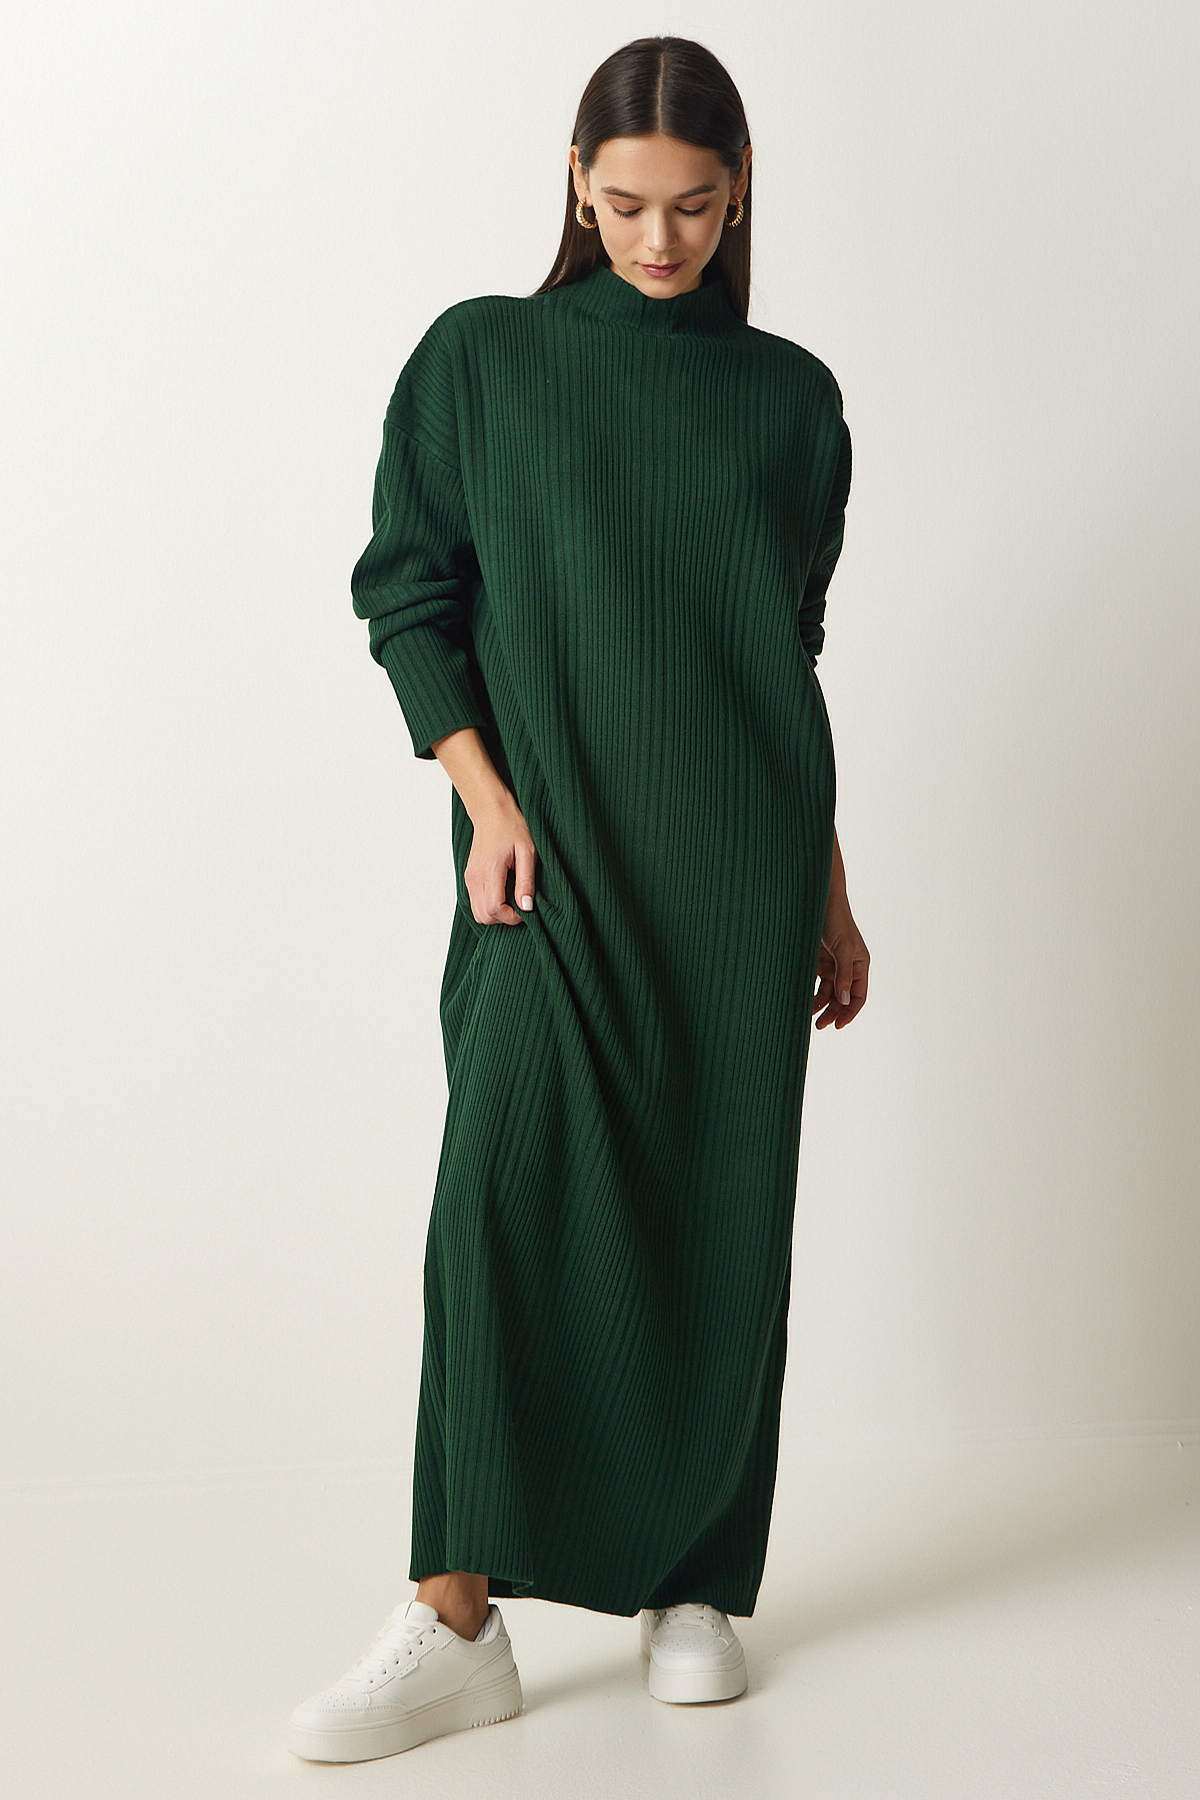 Levně Happiness İstanbul Women's Dark Green High Neck Oversize Knitwear Dress